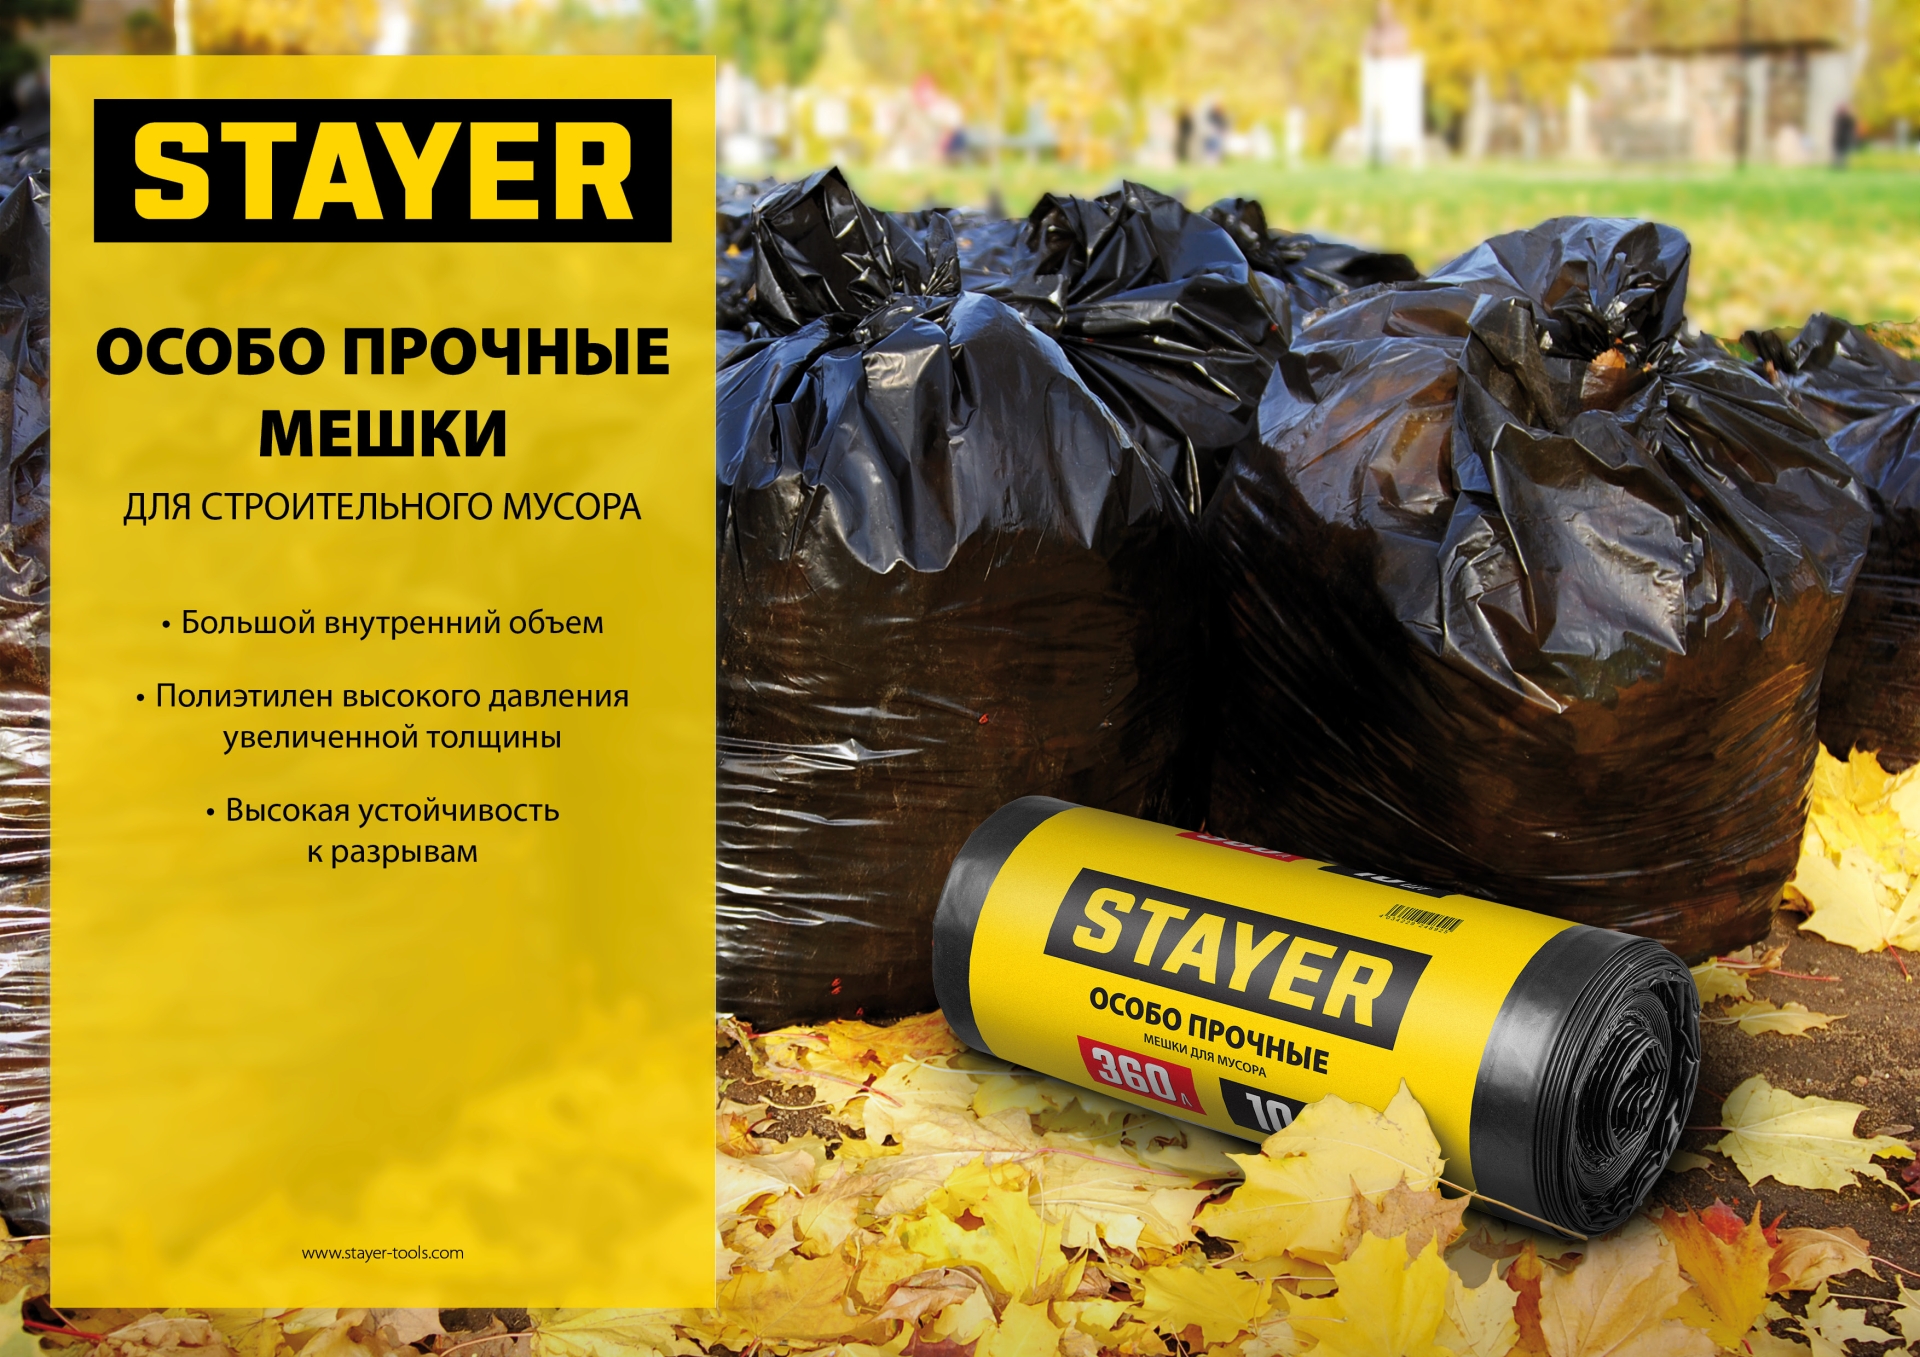 Stayer HEAVY DUTY, 120 л, 10 шт, черные, особопрочные, строительные мусорные мешки (39157-120)